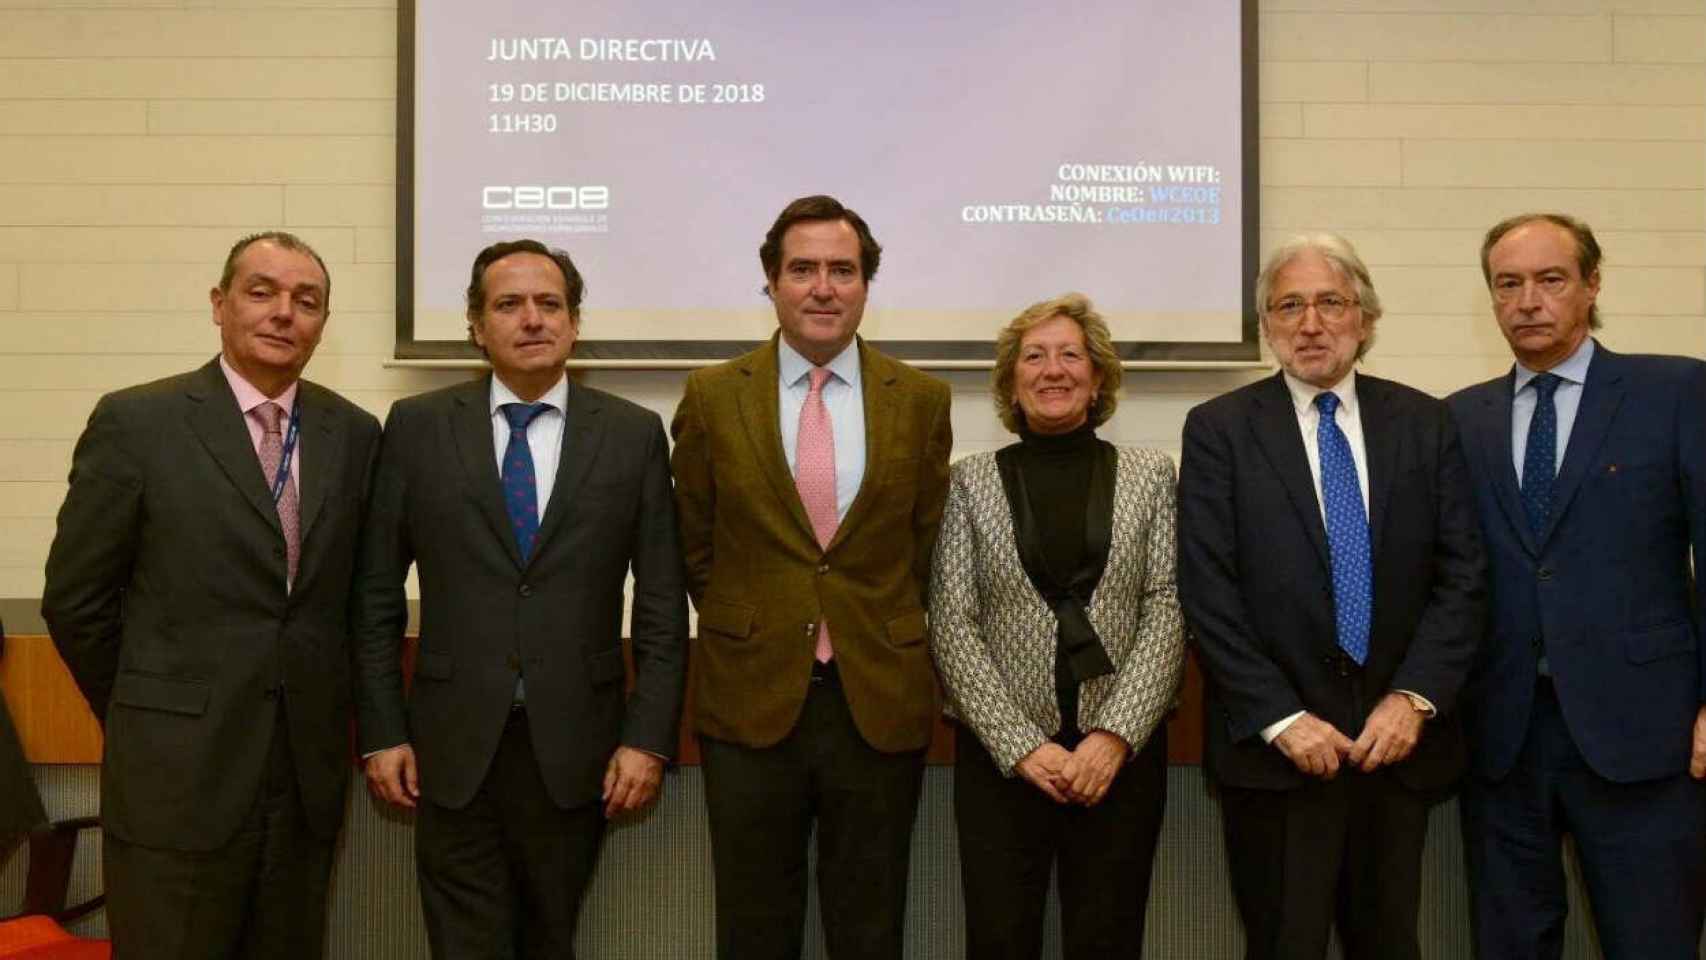 Josep Sánchez Llibre ha sido nombradp vicepresidente de la patronal española / CEOE